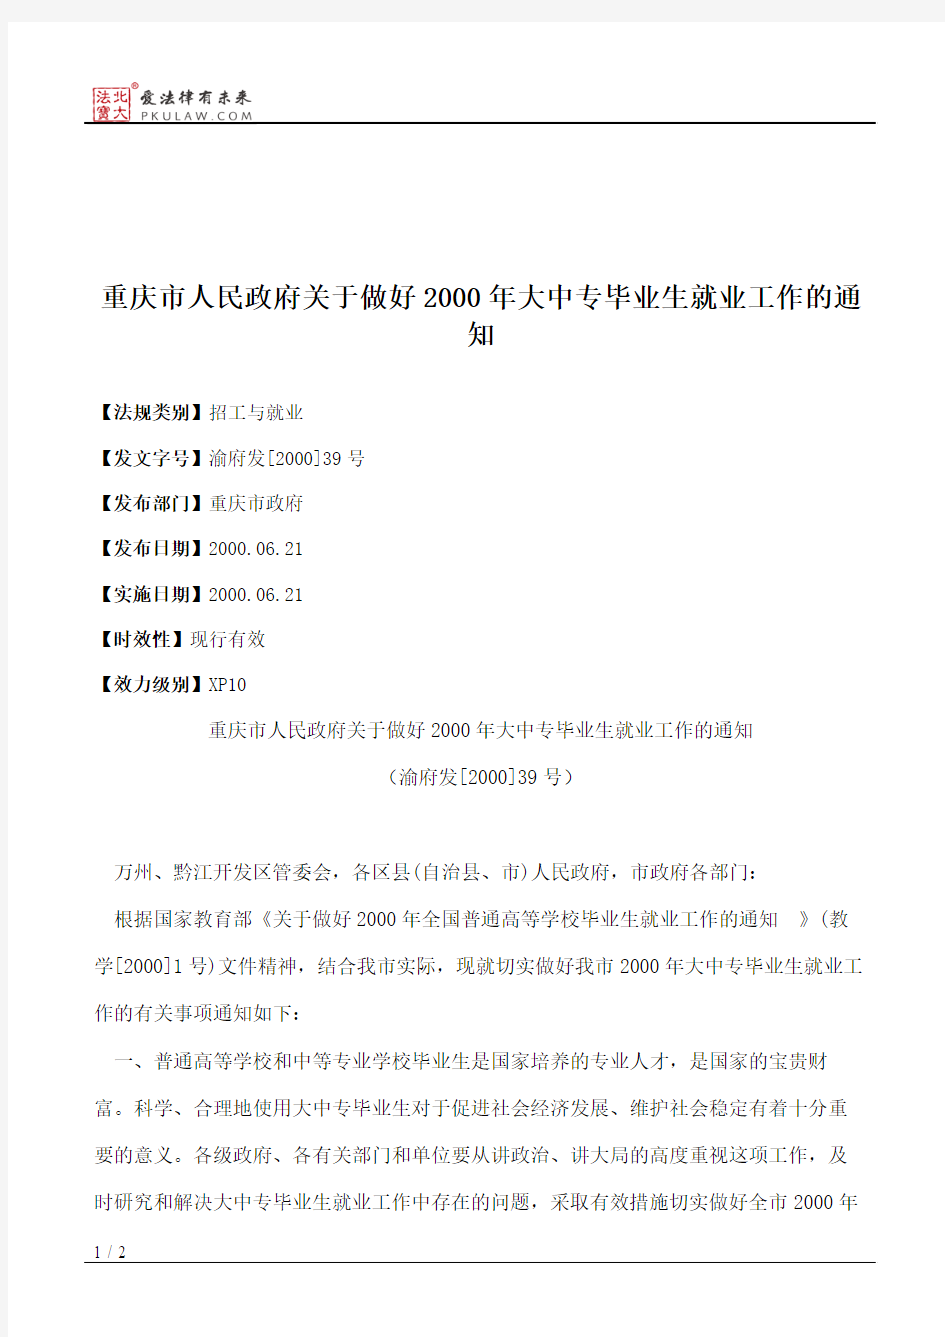 重庆市人民政府关于做好2000年大中专毕业生就业工作的通知